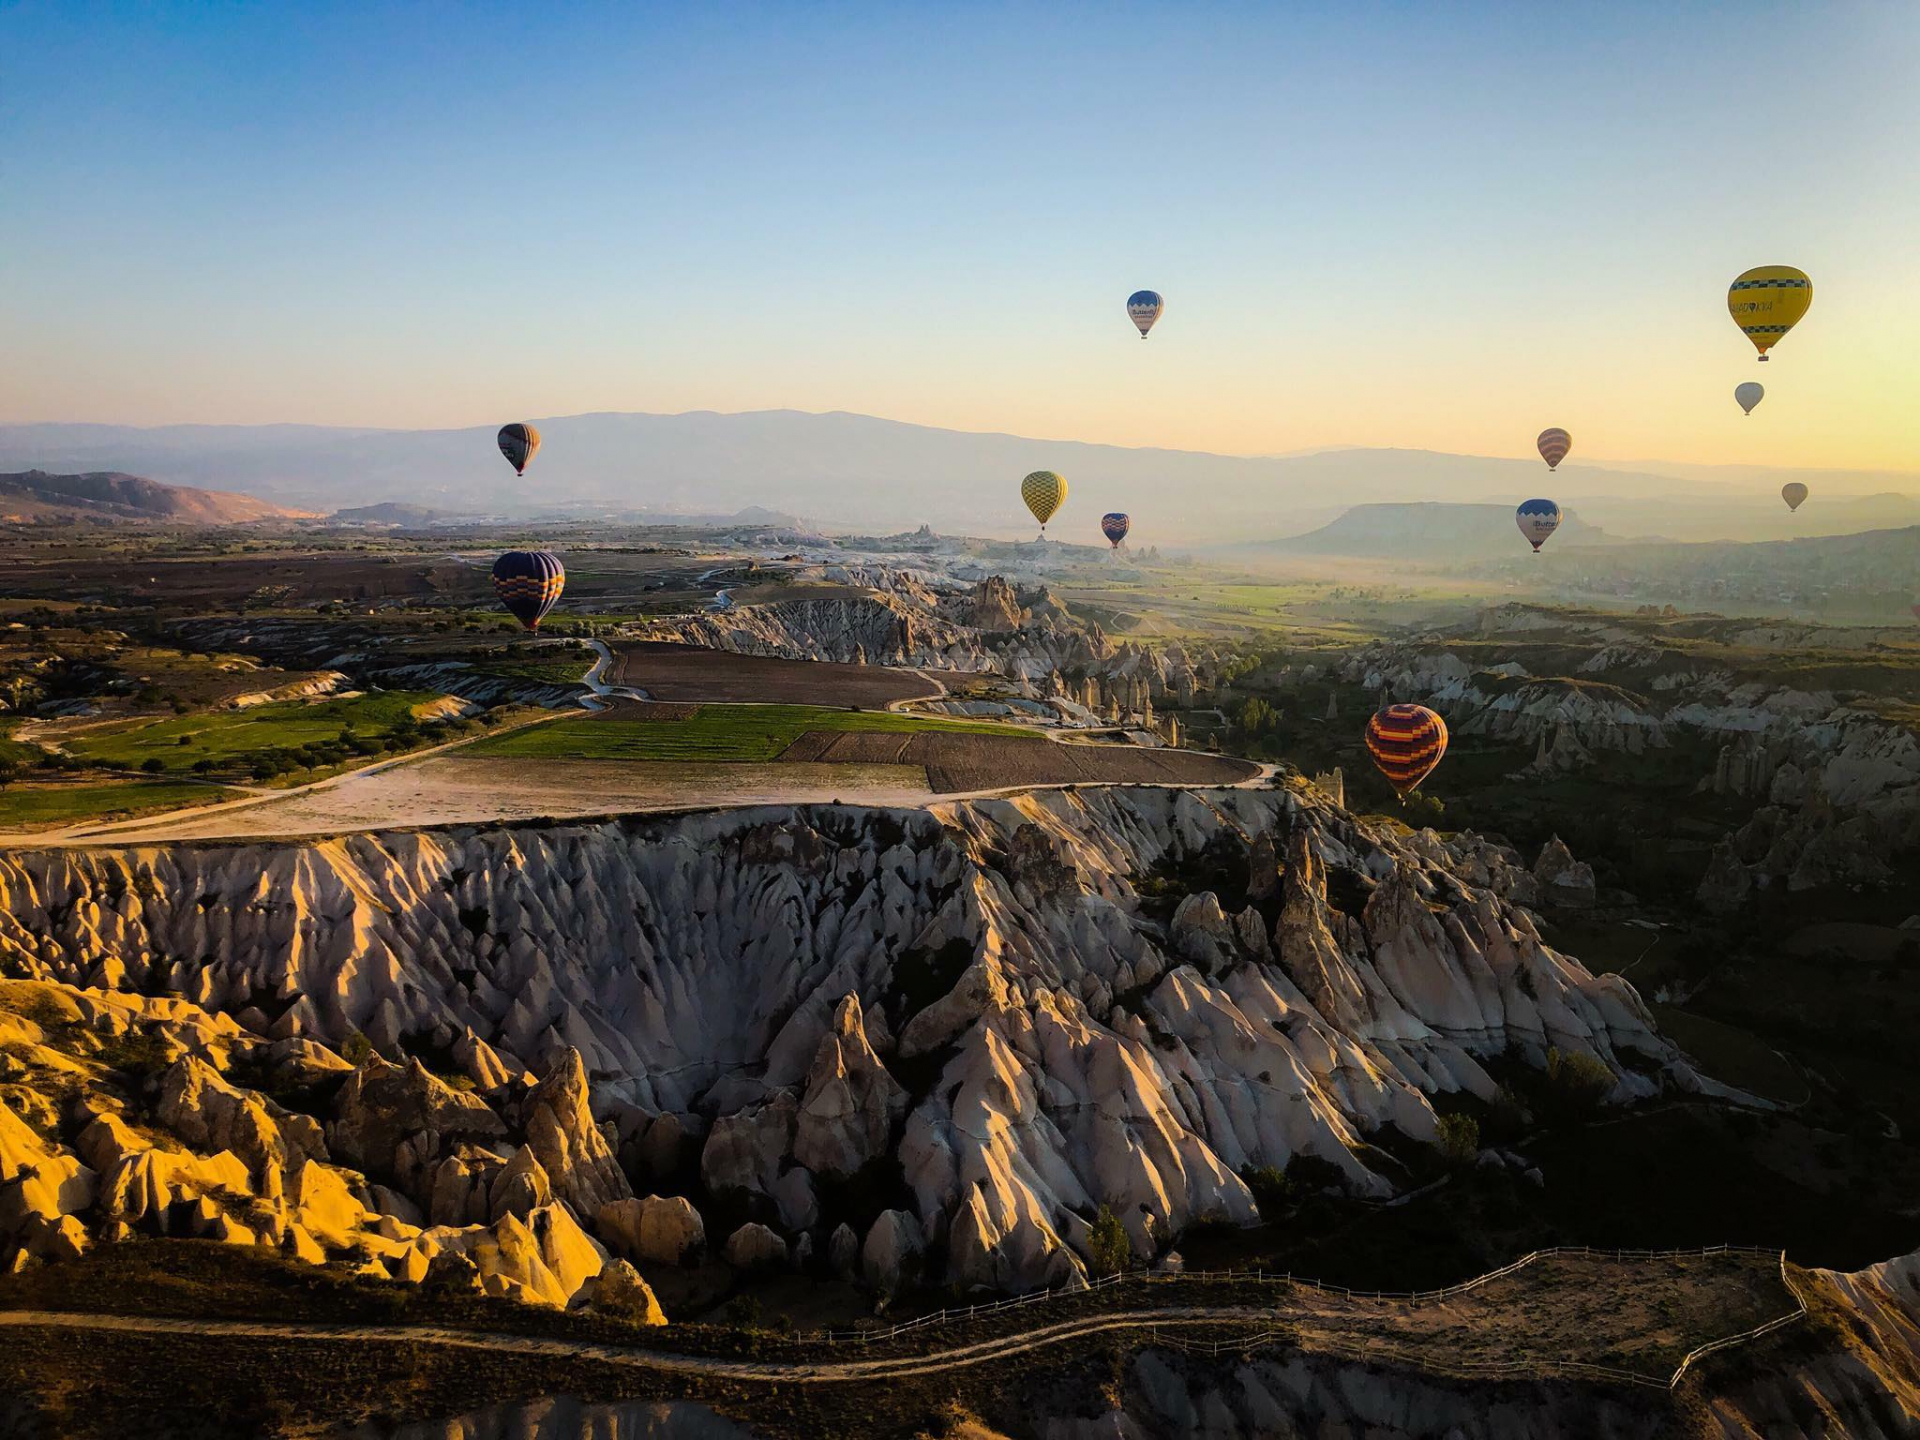 Khinh khí cầu bay trên Cappadocia - địa điểm du lịch nổi tiếng ở miền trung Thổ Nhĩ Kỳ, phần lớn nằm trong tỉnh Nevsehir. Nơi đây có cấu tạo địa chất đặc biệt, cũng là điểm bay khinh khí cầu đẹp nhất thế giới.